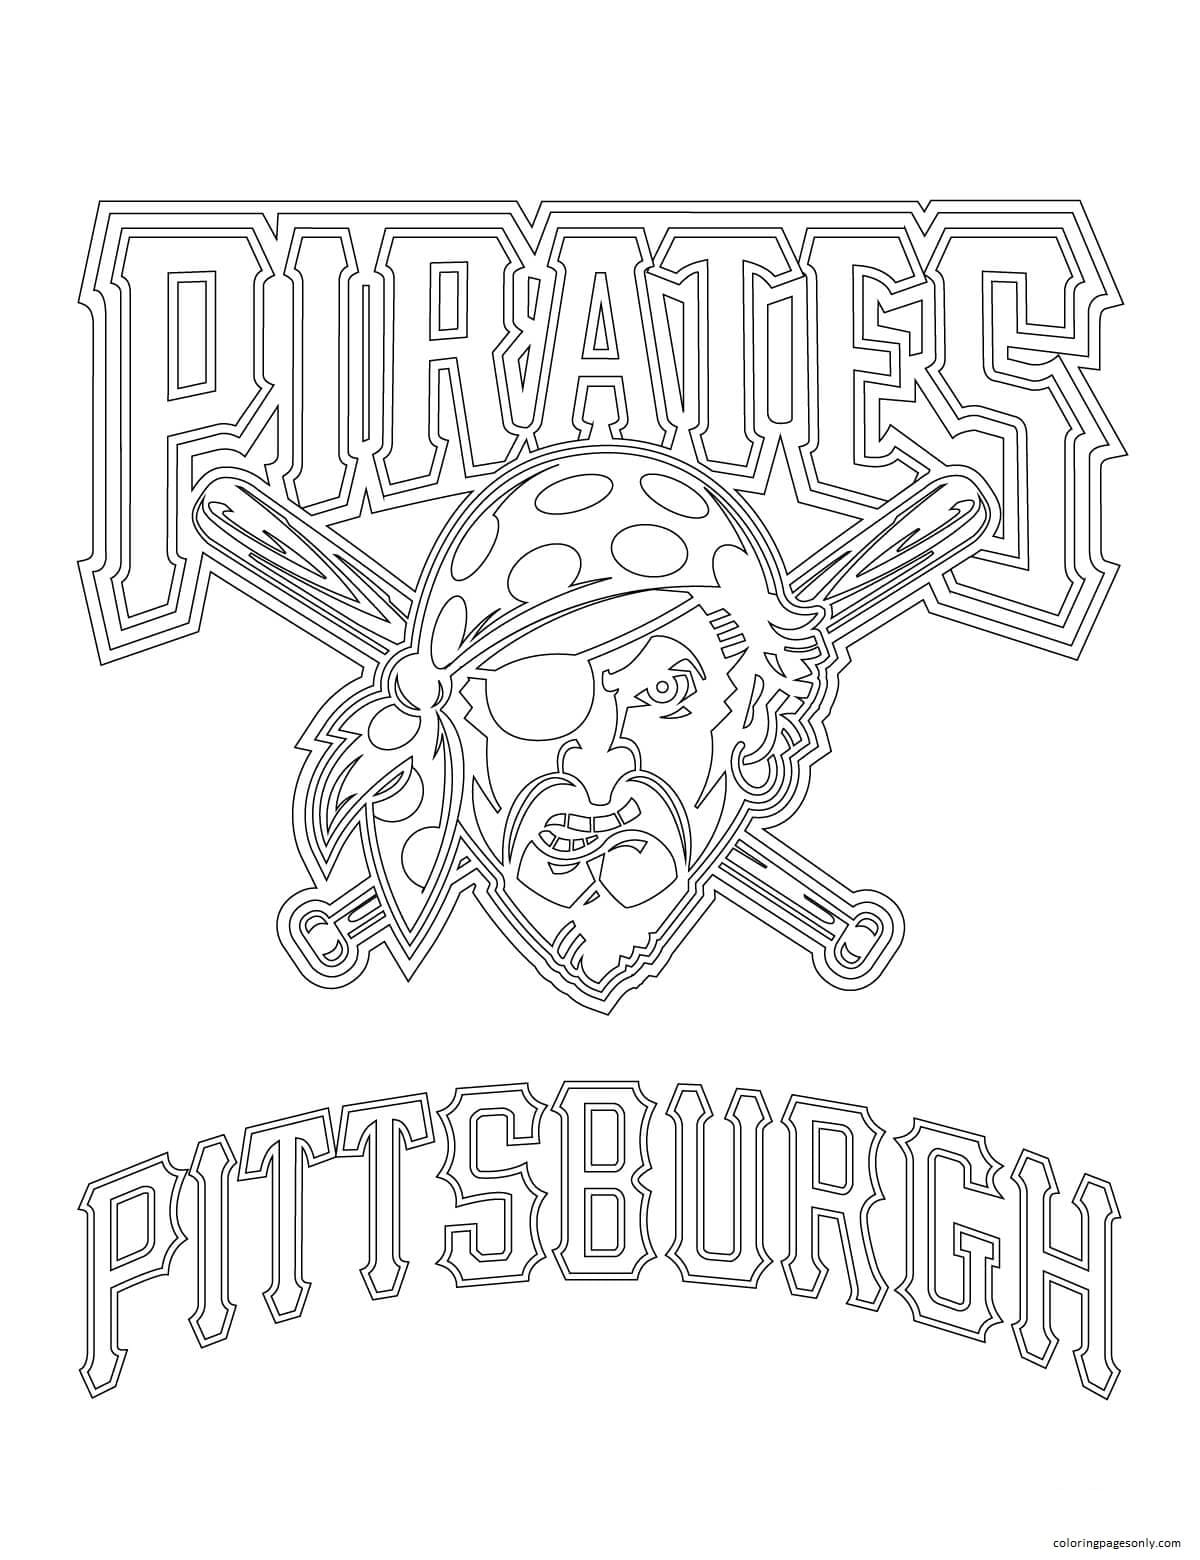 Логотип «Питтсбург Пайрэтс» из бейсбола